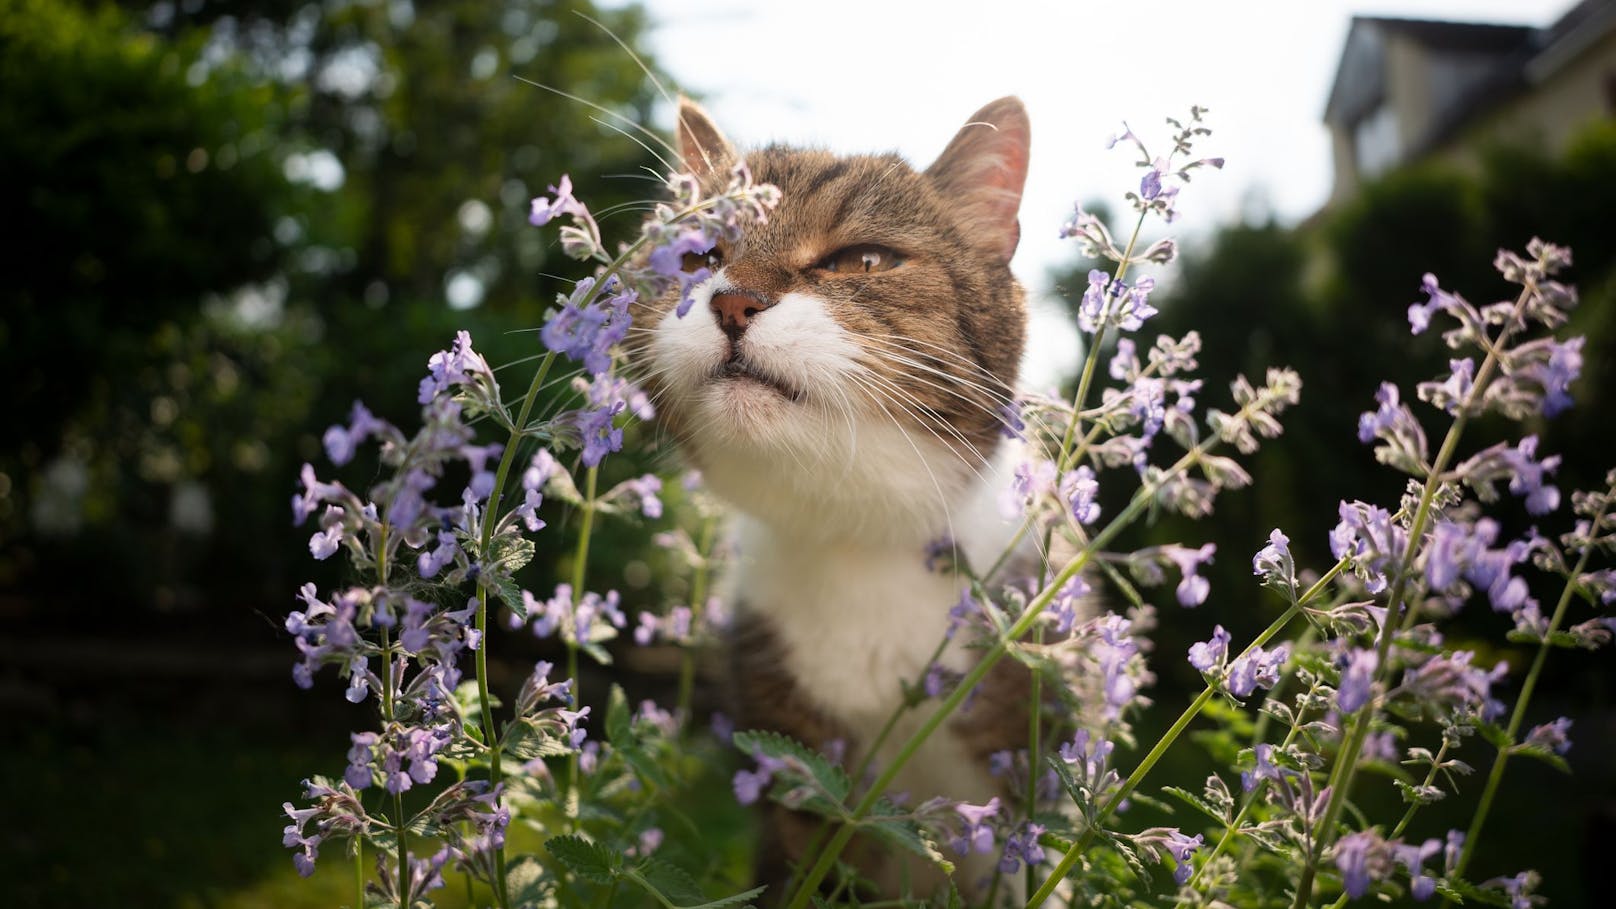 Unsereins findet den Duft der Katzenminze jetzt gar nicht so berauschend, aber die winzigen Blüten sind ein Hingucker - ein großes Plus für den Garten.